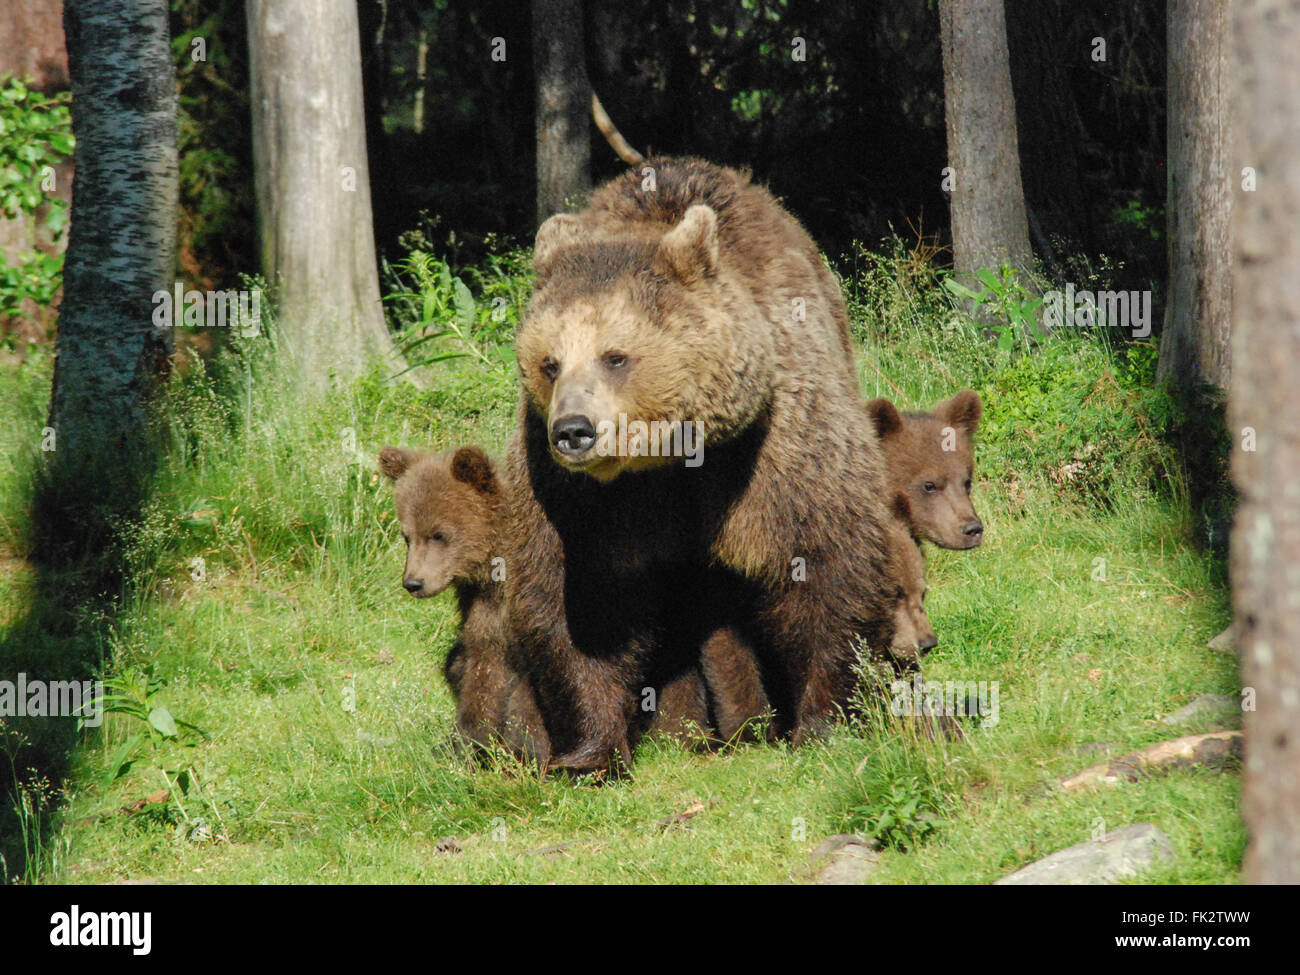 Unione di orso bruno eurasiatico o l'orso bruno (Ursus arctos arctos) nella Taiga foresta in Finlandia orientale - madre e tre cuccioli Foto Stock